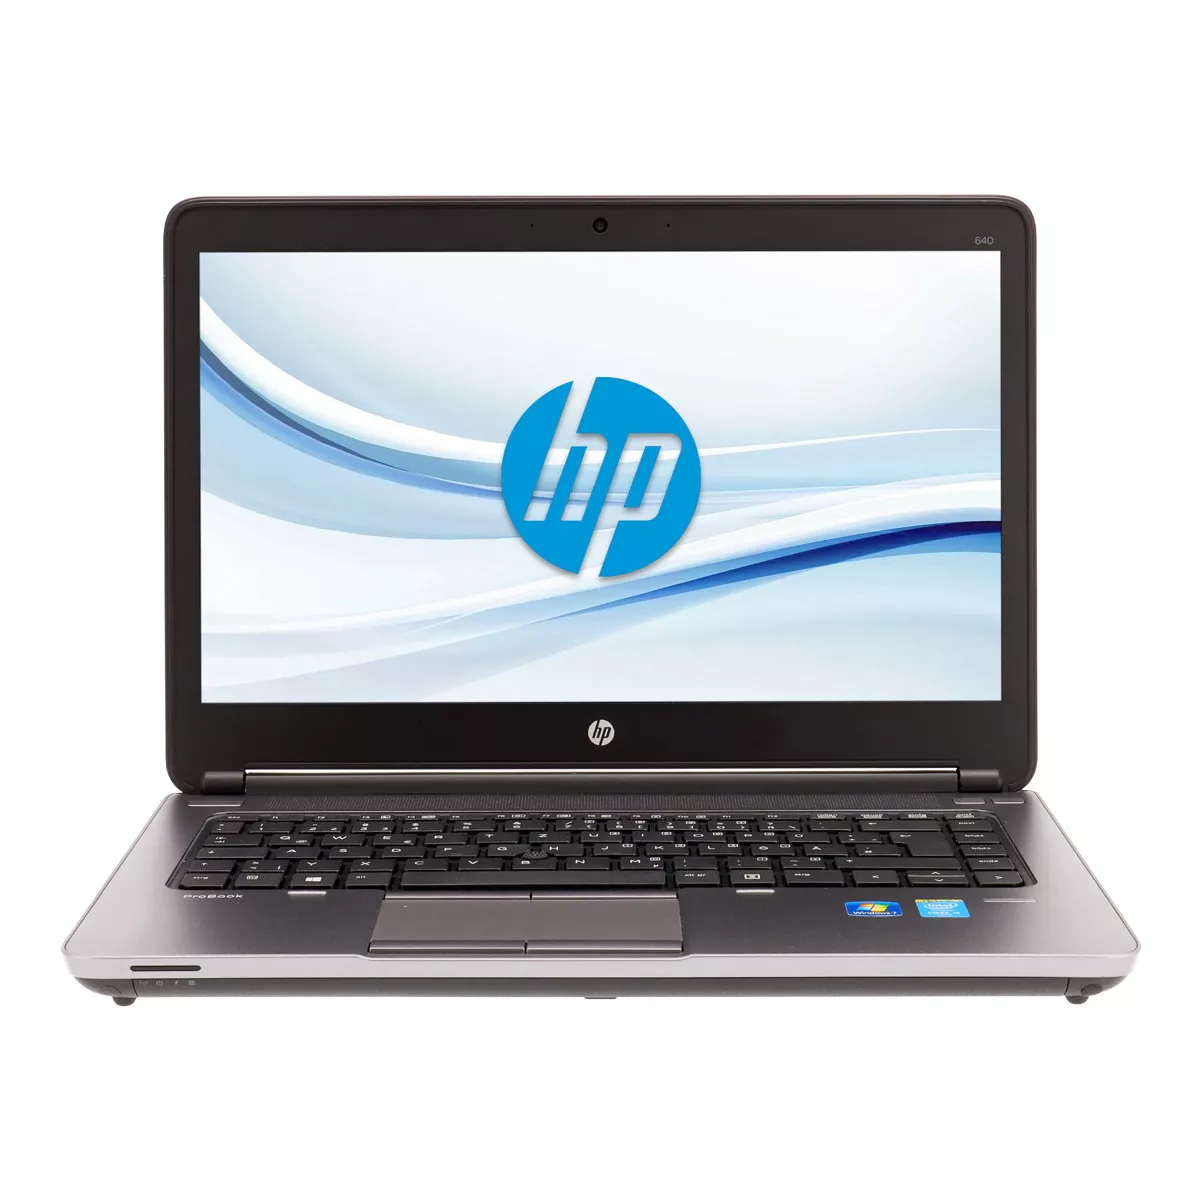 HP ProBook 640 G1 Core i5 4310M 500 GB Webcam A